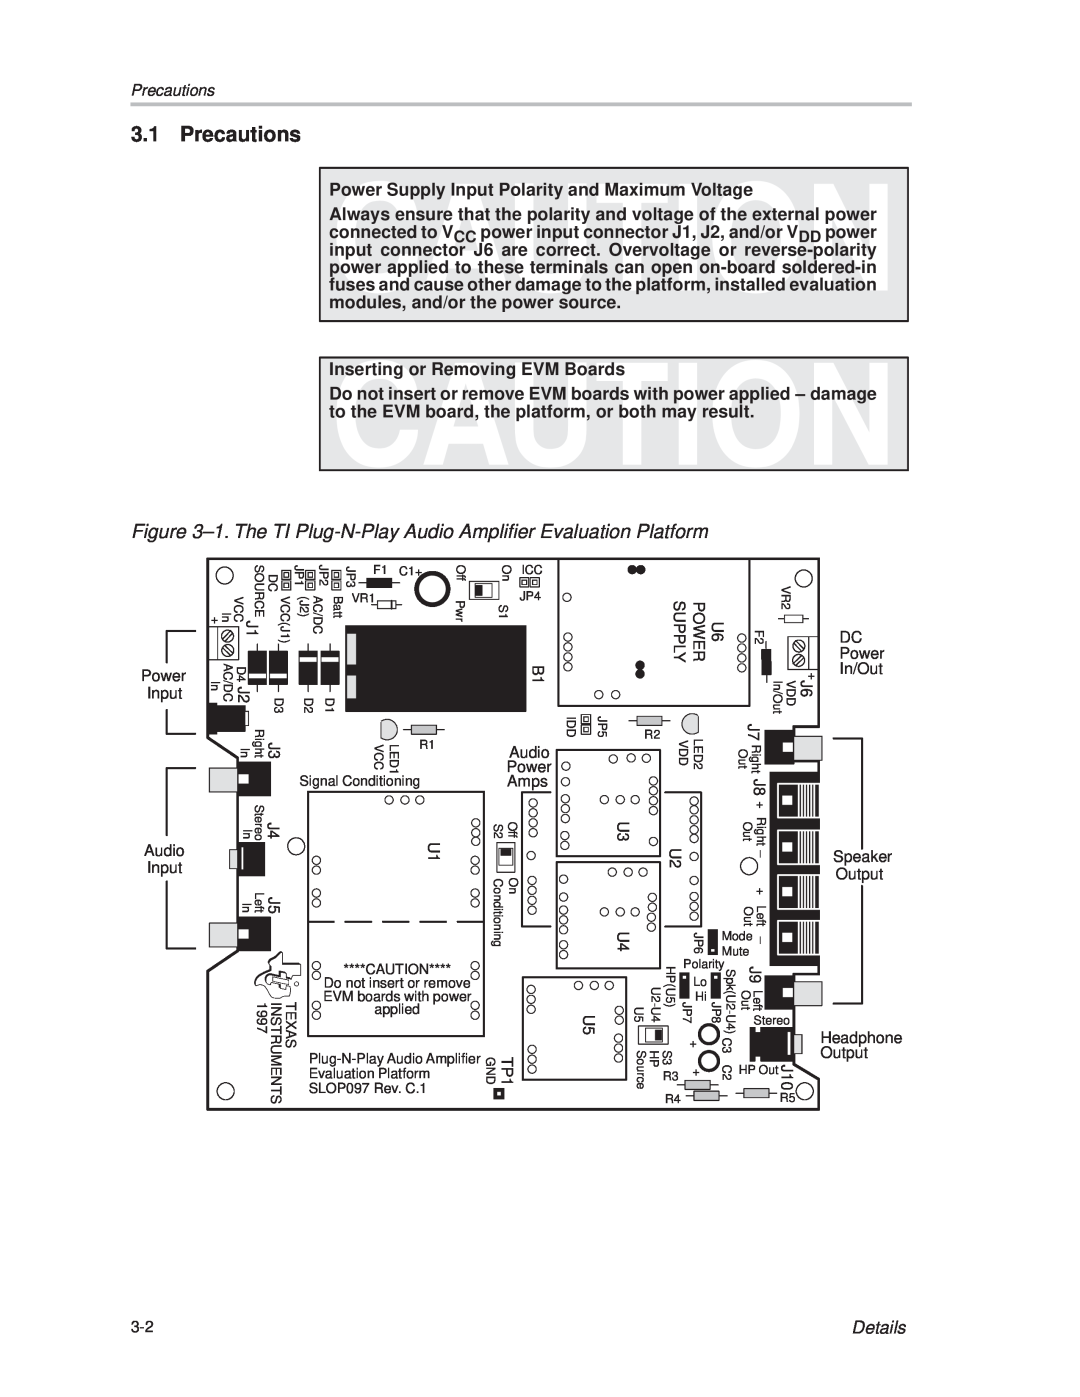 Texas Instruments TPA701 manual Precautions, Details 